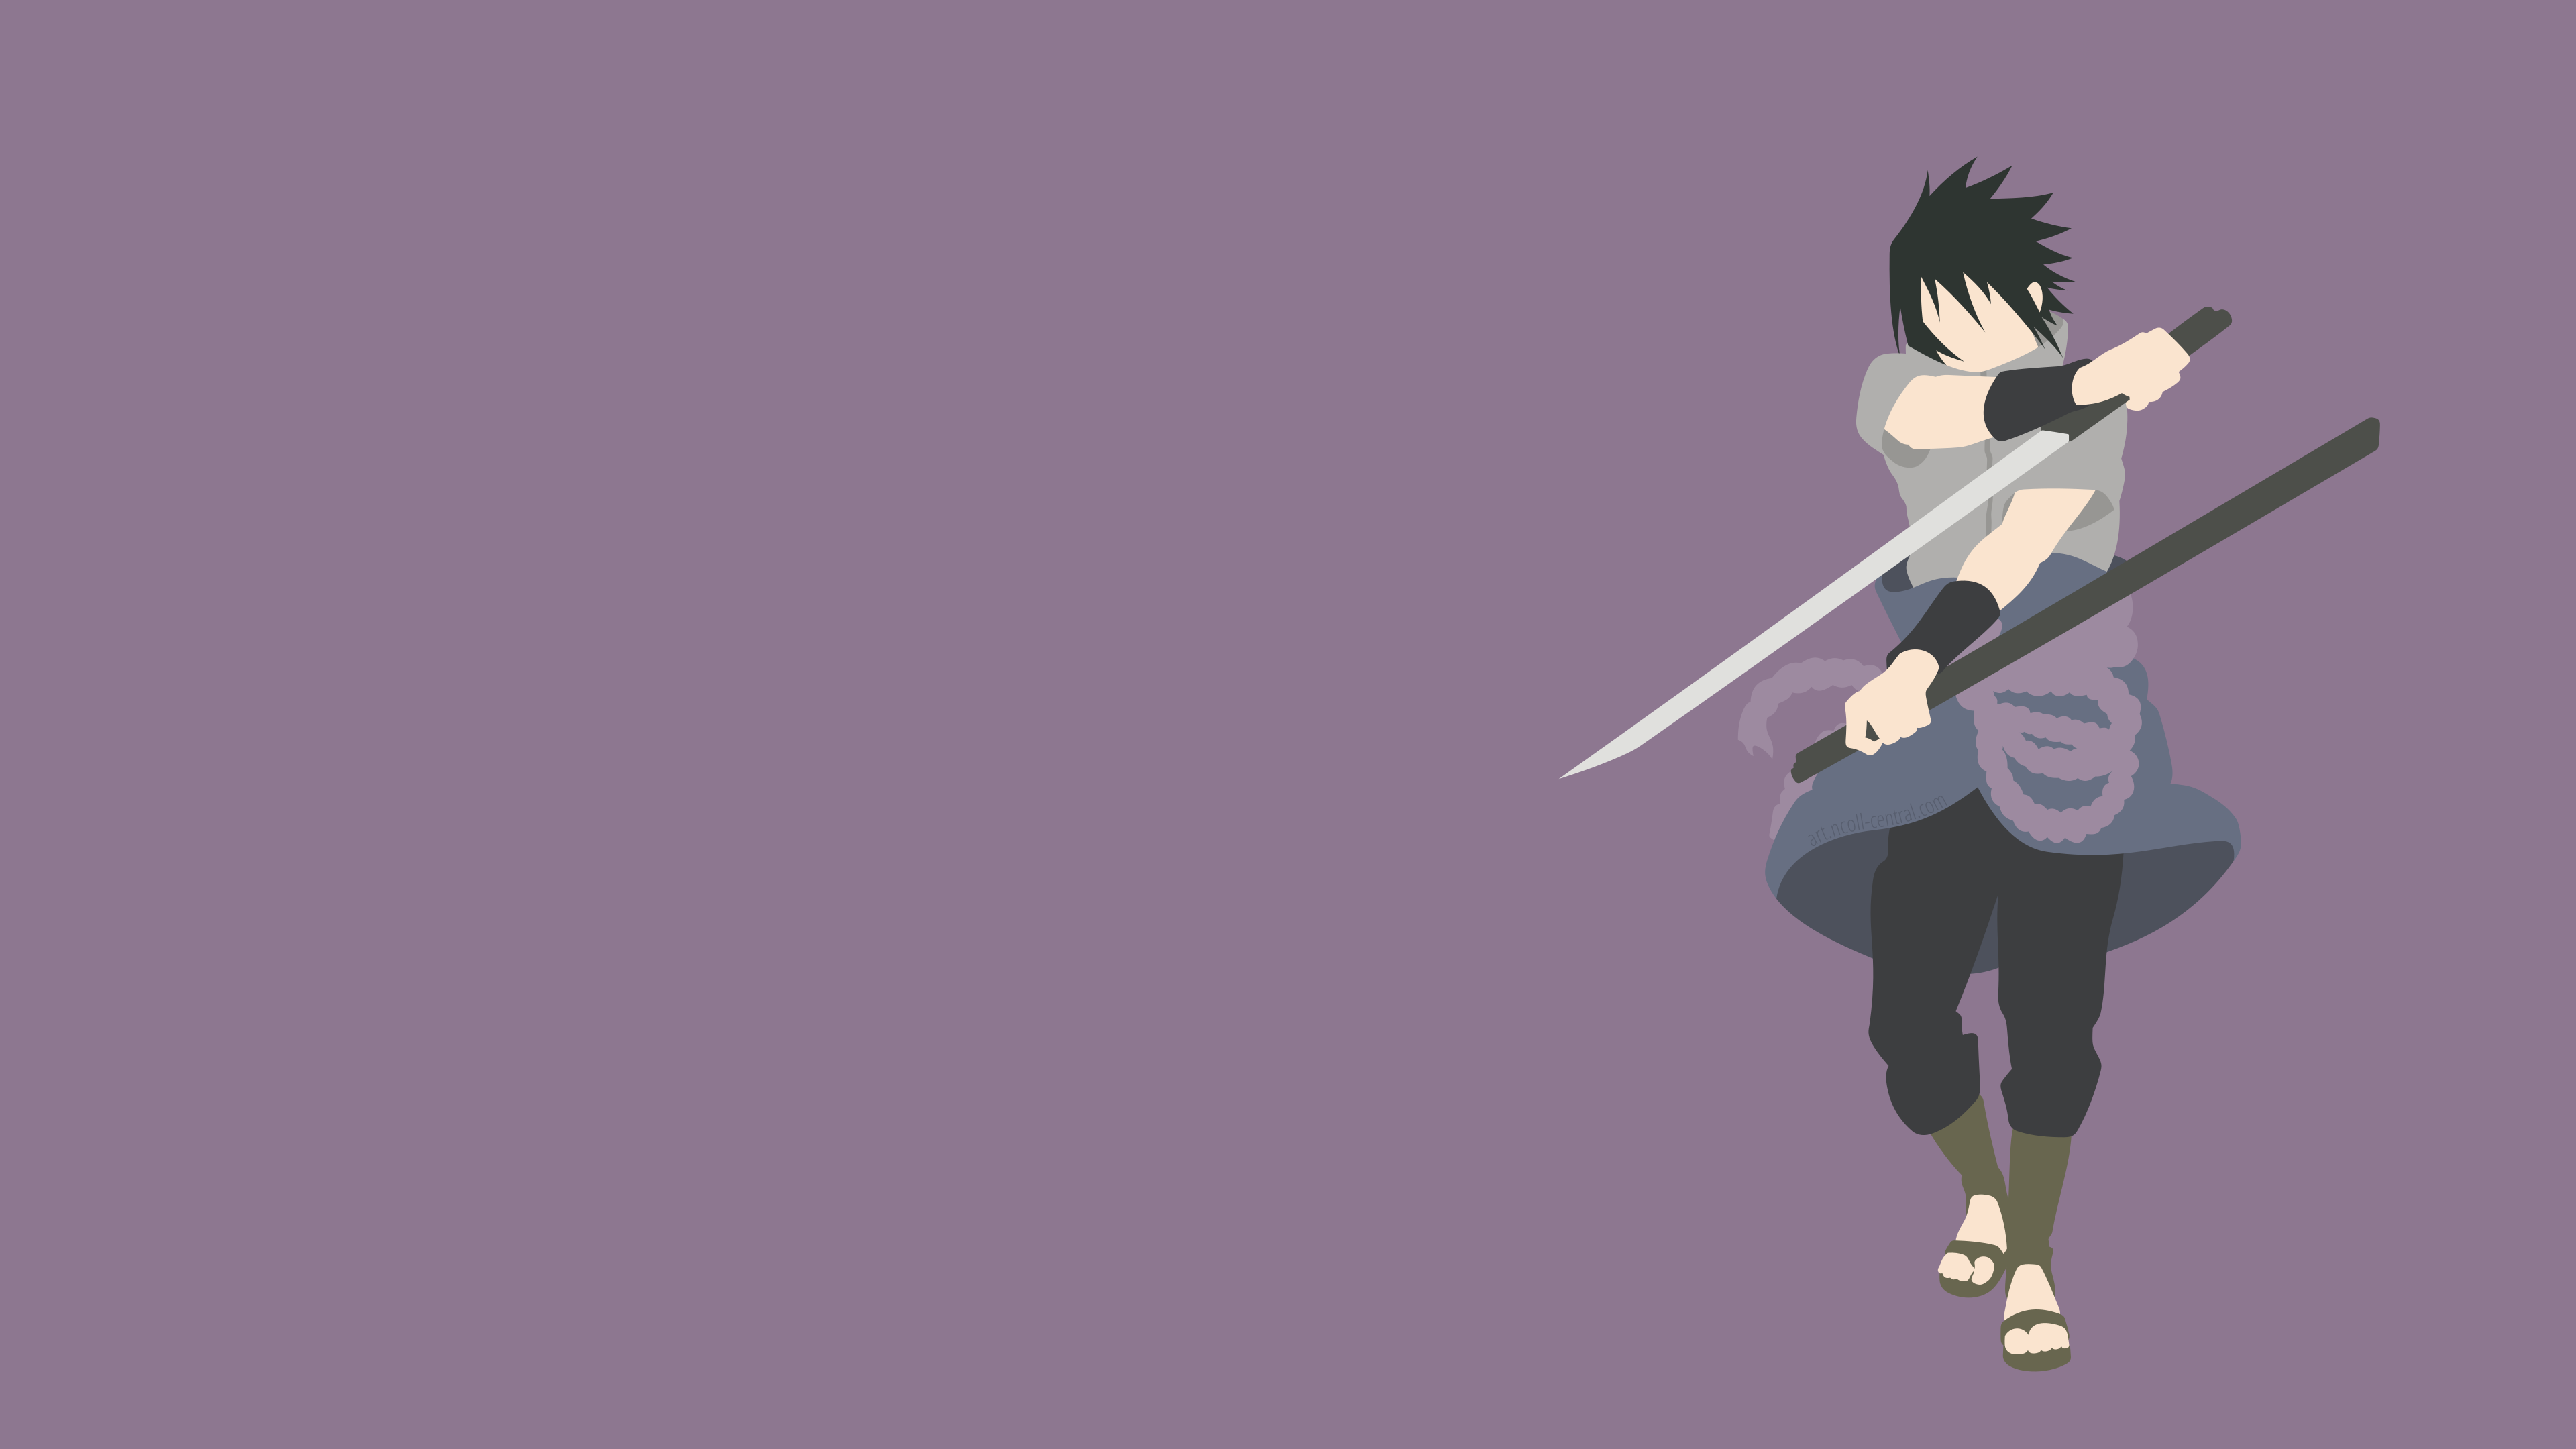 Sasuke Backgrounds